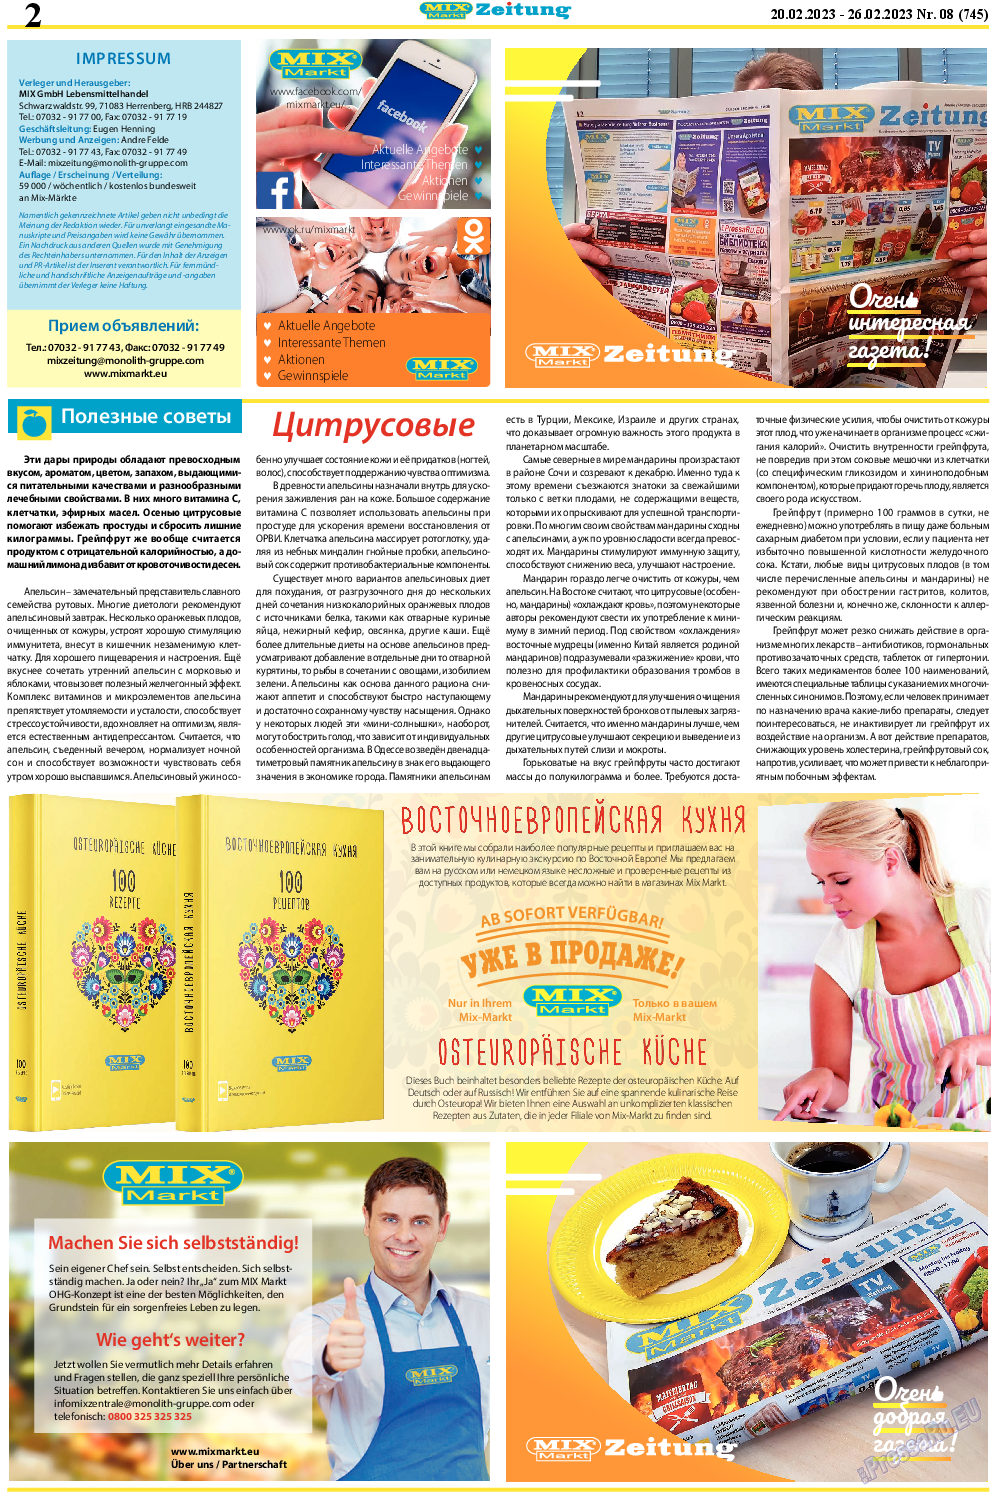 MIX-Markt Zeitung, газета. 2023 №8 стр.2